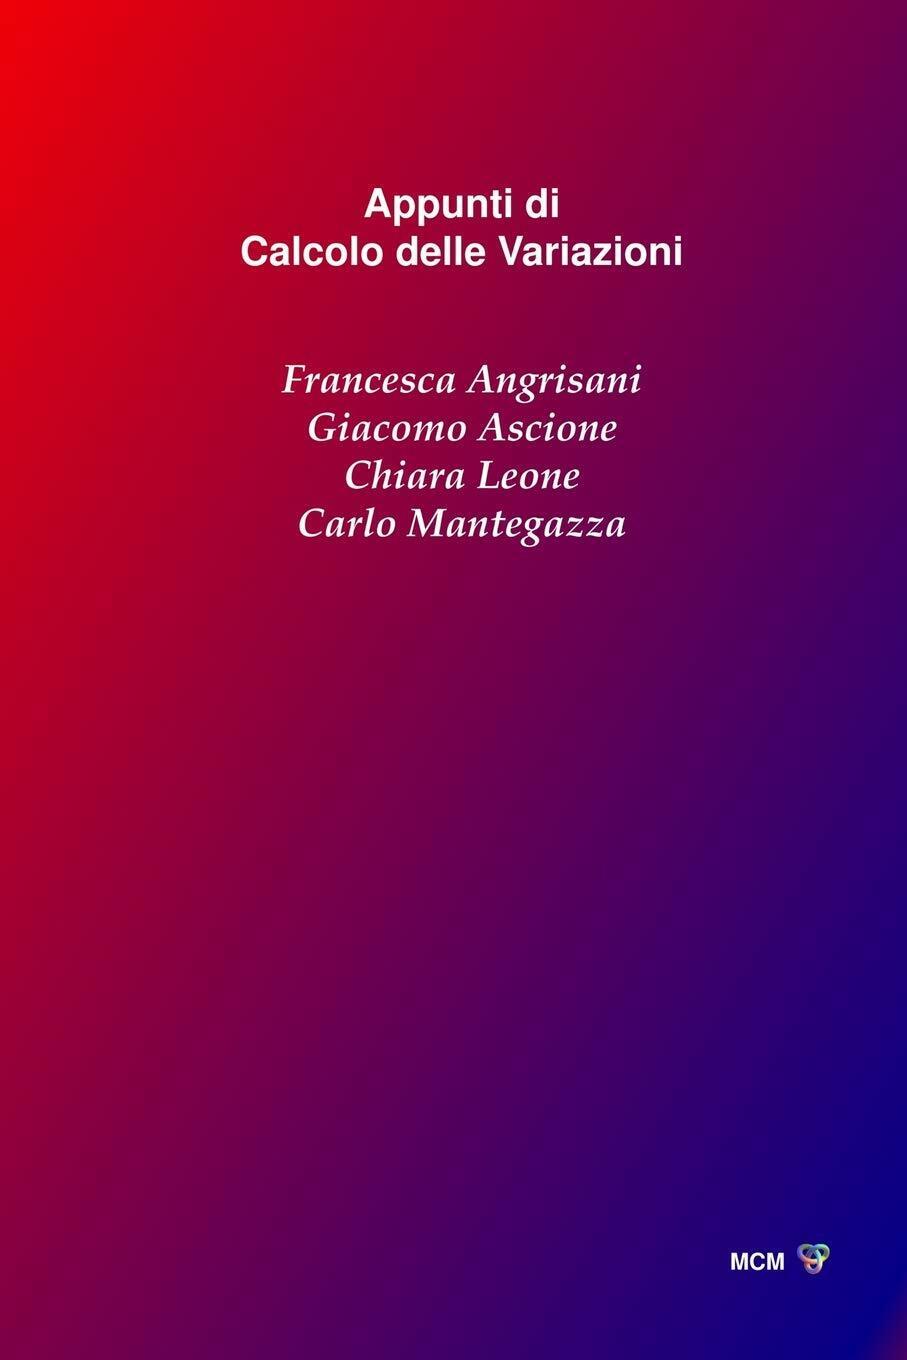 Appunti Di Calcolo Delle Variazioni di Francesca Angrisani, Giacomo Ascione, Chi